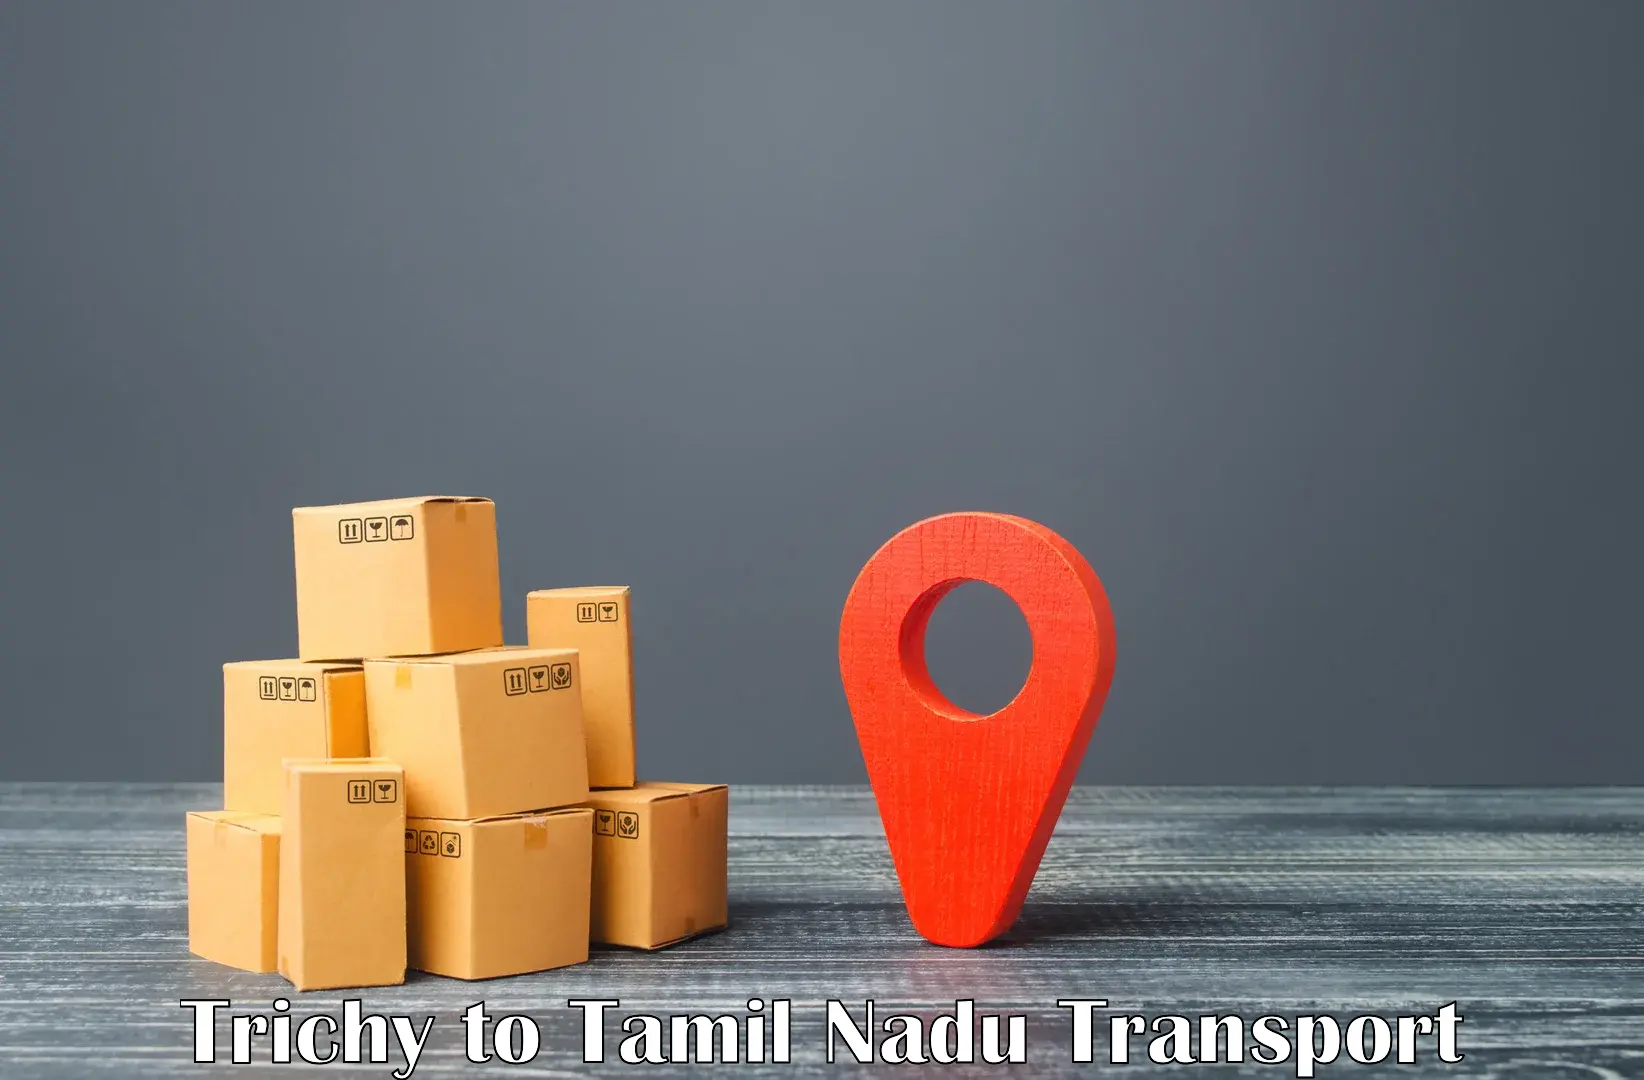 Transport in sharing Trichy to Tiruchirappalli